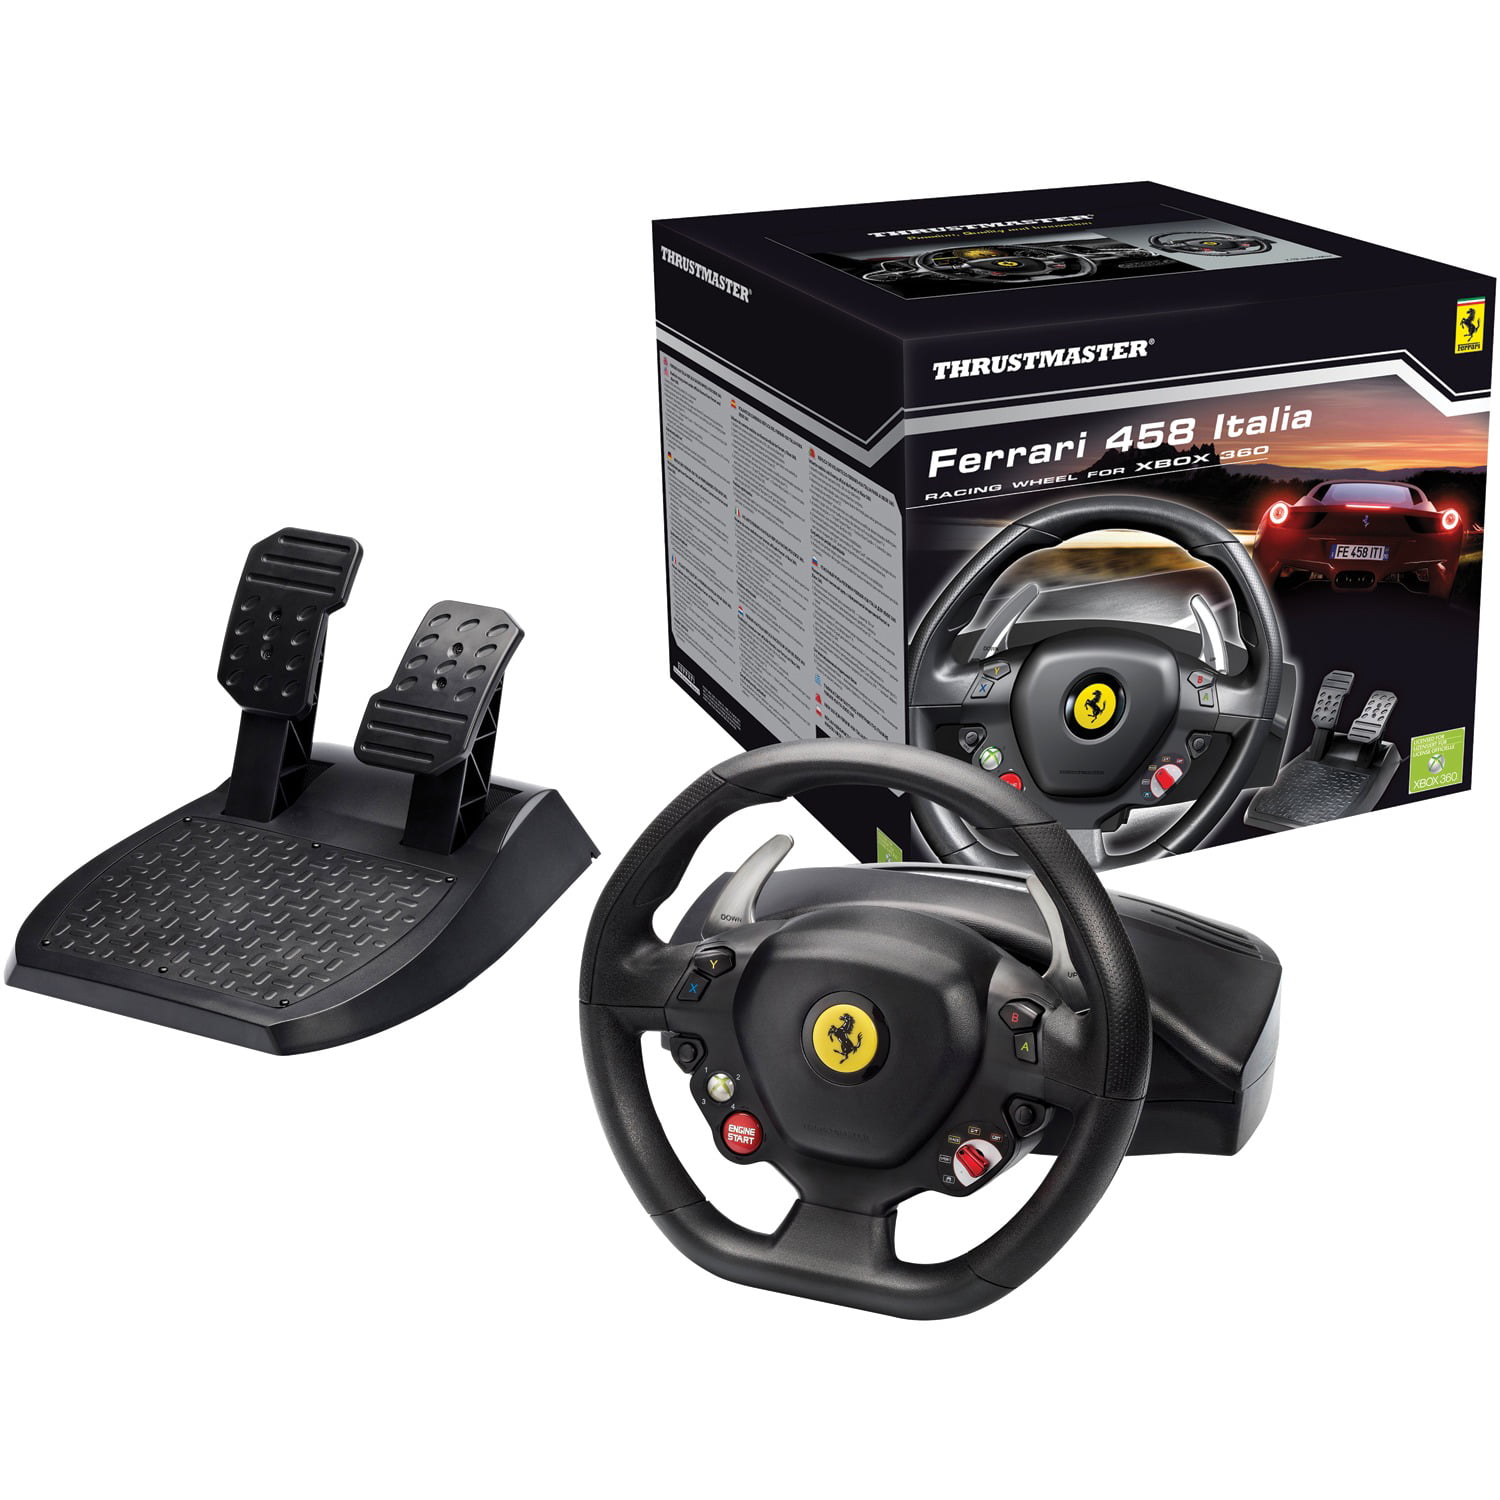 Thrustmaster Ferrari 458 Racing Wheel Xbox 360 Black